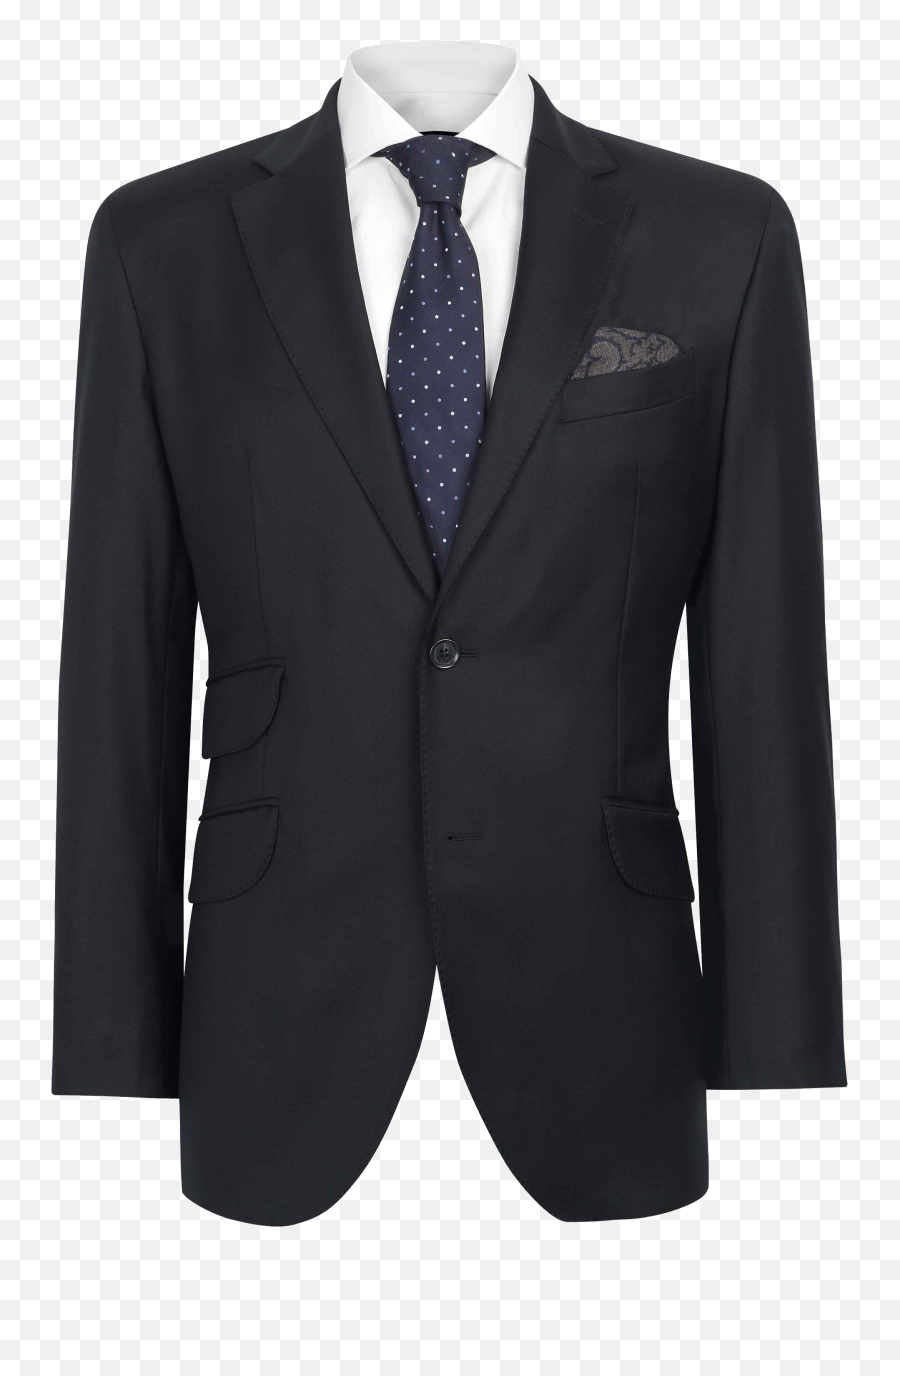 Hd Png Transparent Suit - Suit Tie For Photoshop,Suit Transparent Background